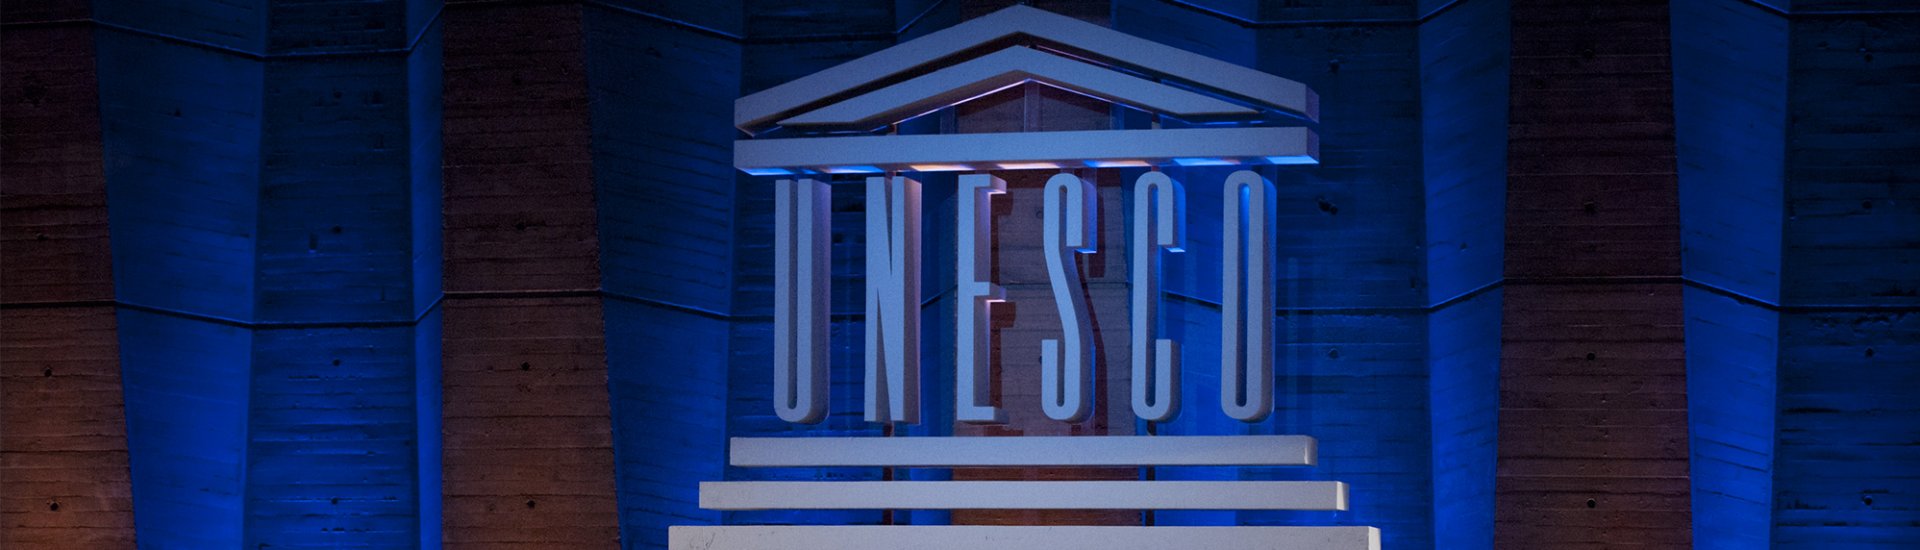 Het logo van Unesco, te zien tijdens de opening van de 38ste Algemene Conferentie in Parijs.